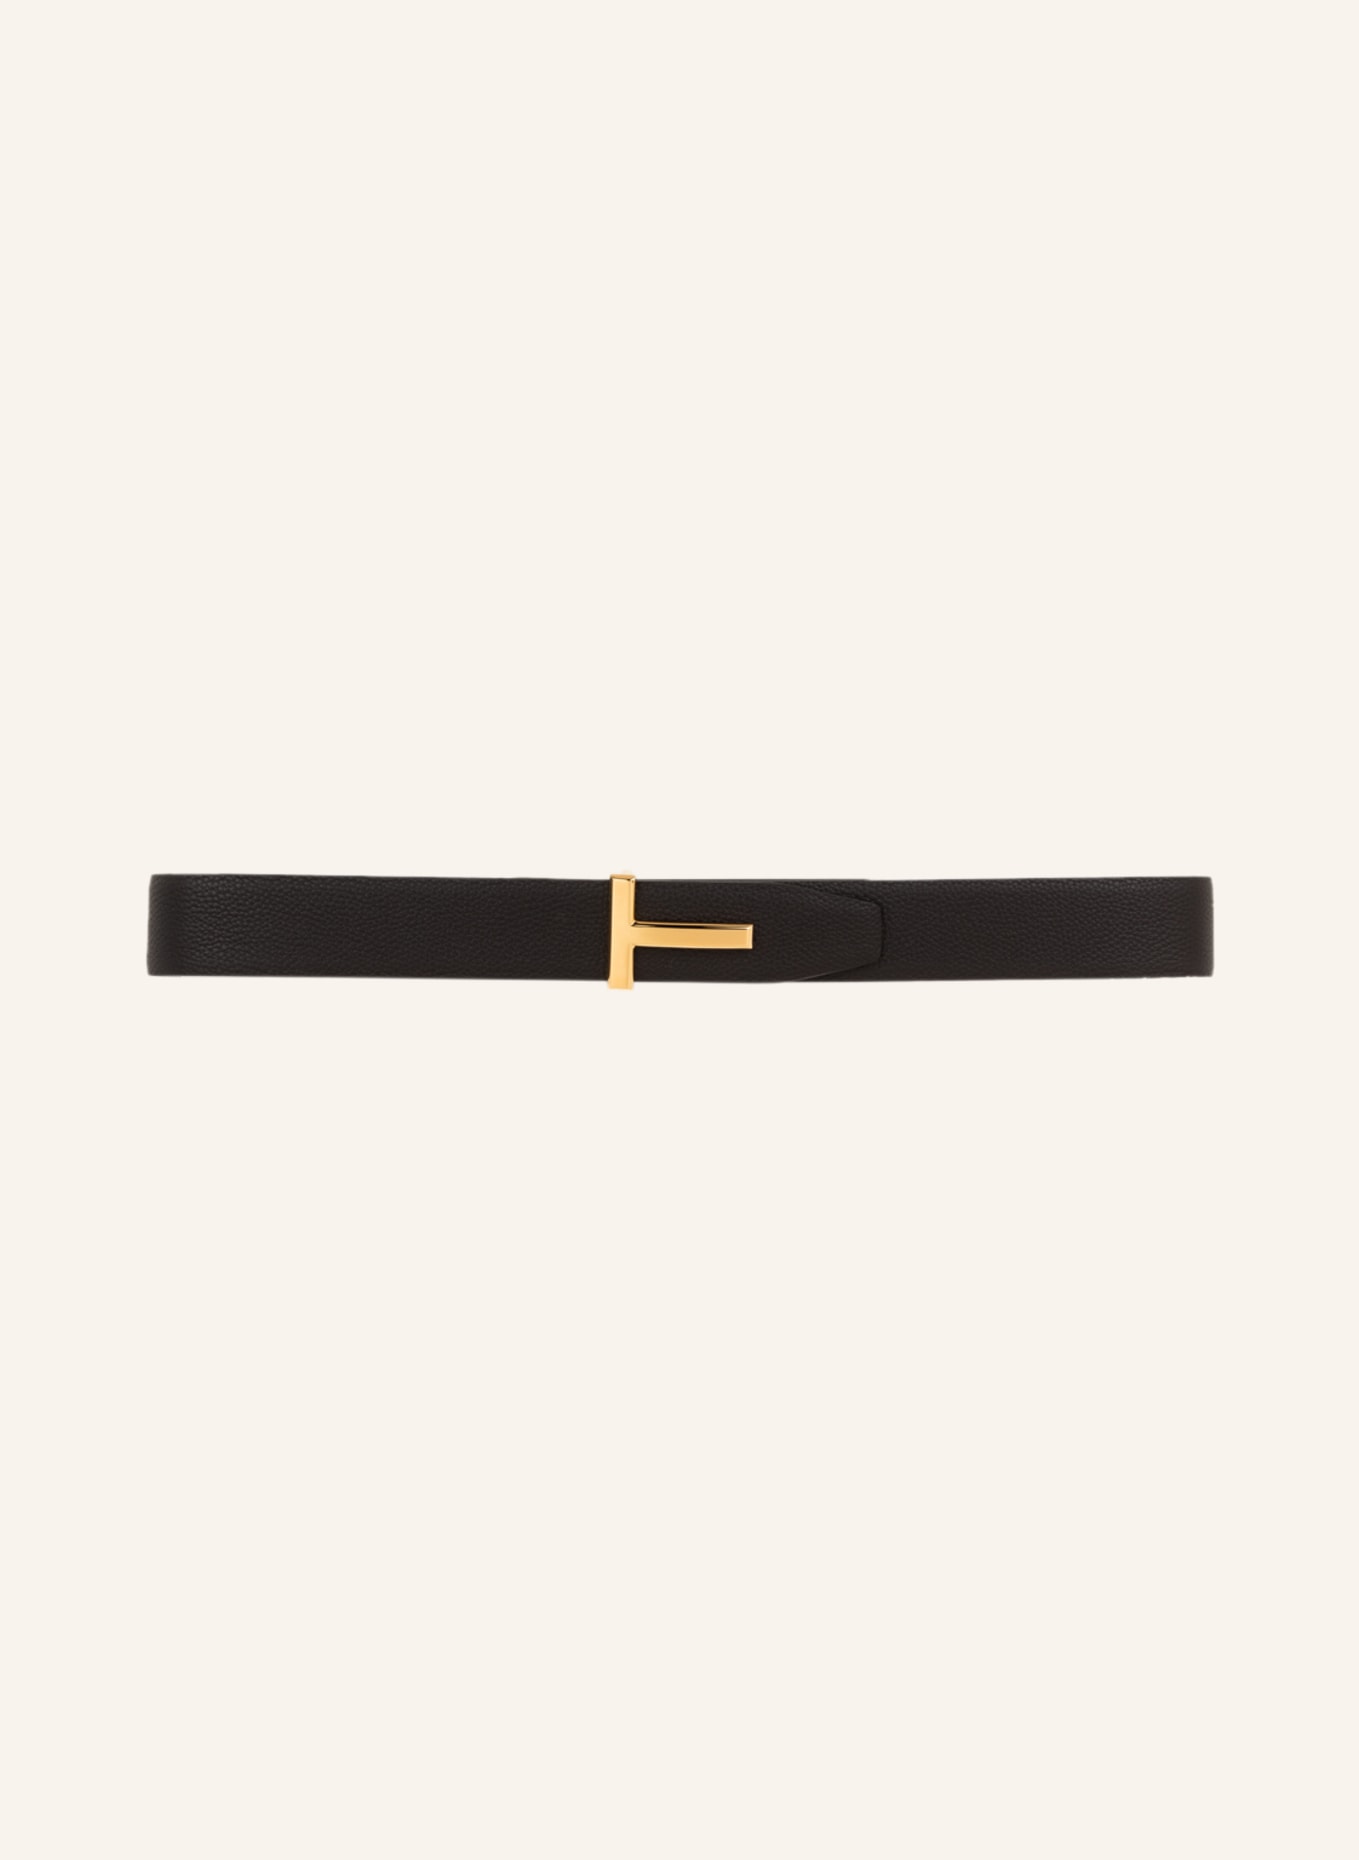 TOM FORD Reversible leather belt, Color: DARK BROWN/ BLACK (Image 3)